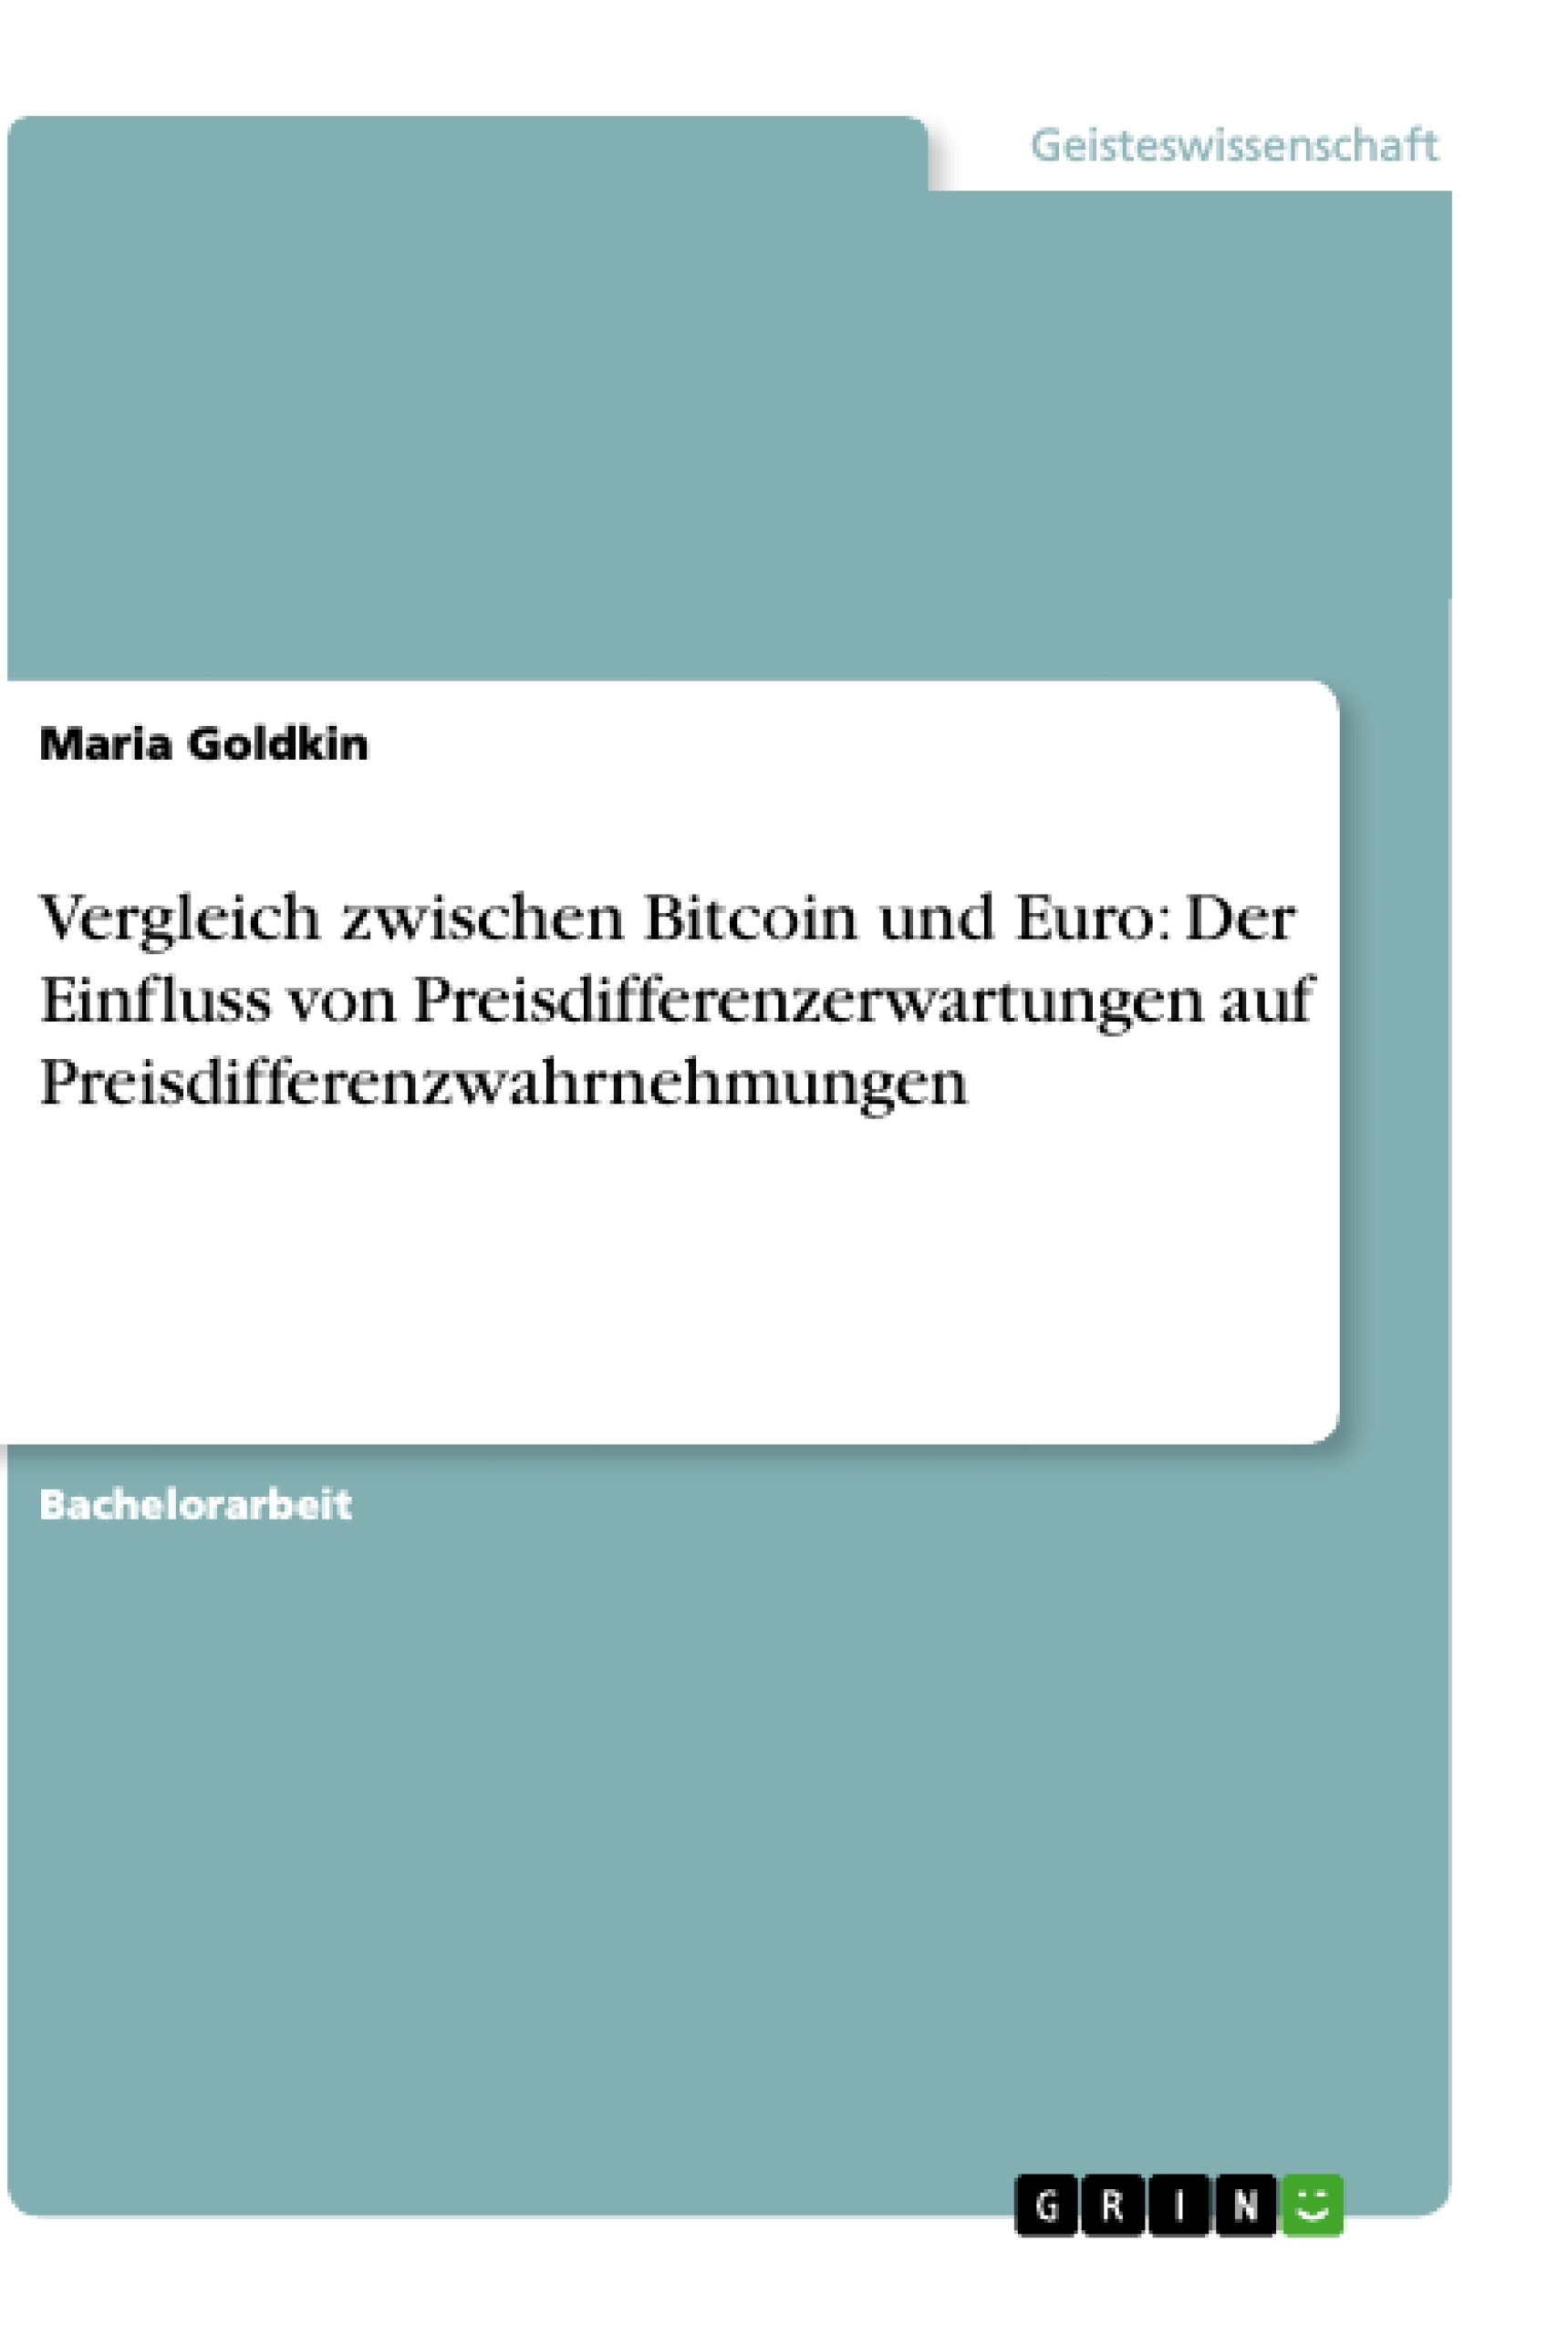 Título: Vergleich zwischen Bitcoin und Euro: Der Einfluss von Preisdifferenzerwartungen auf Preisdifferenzwahrnehmungen